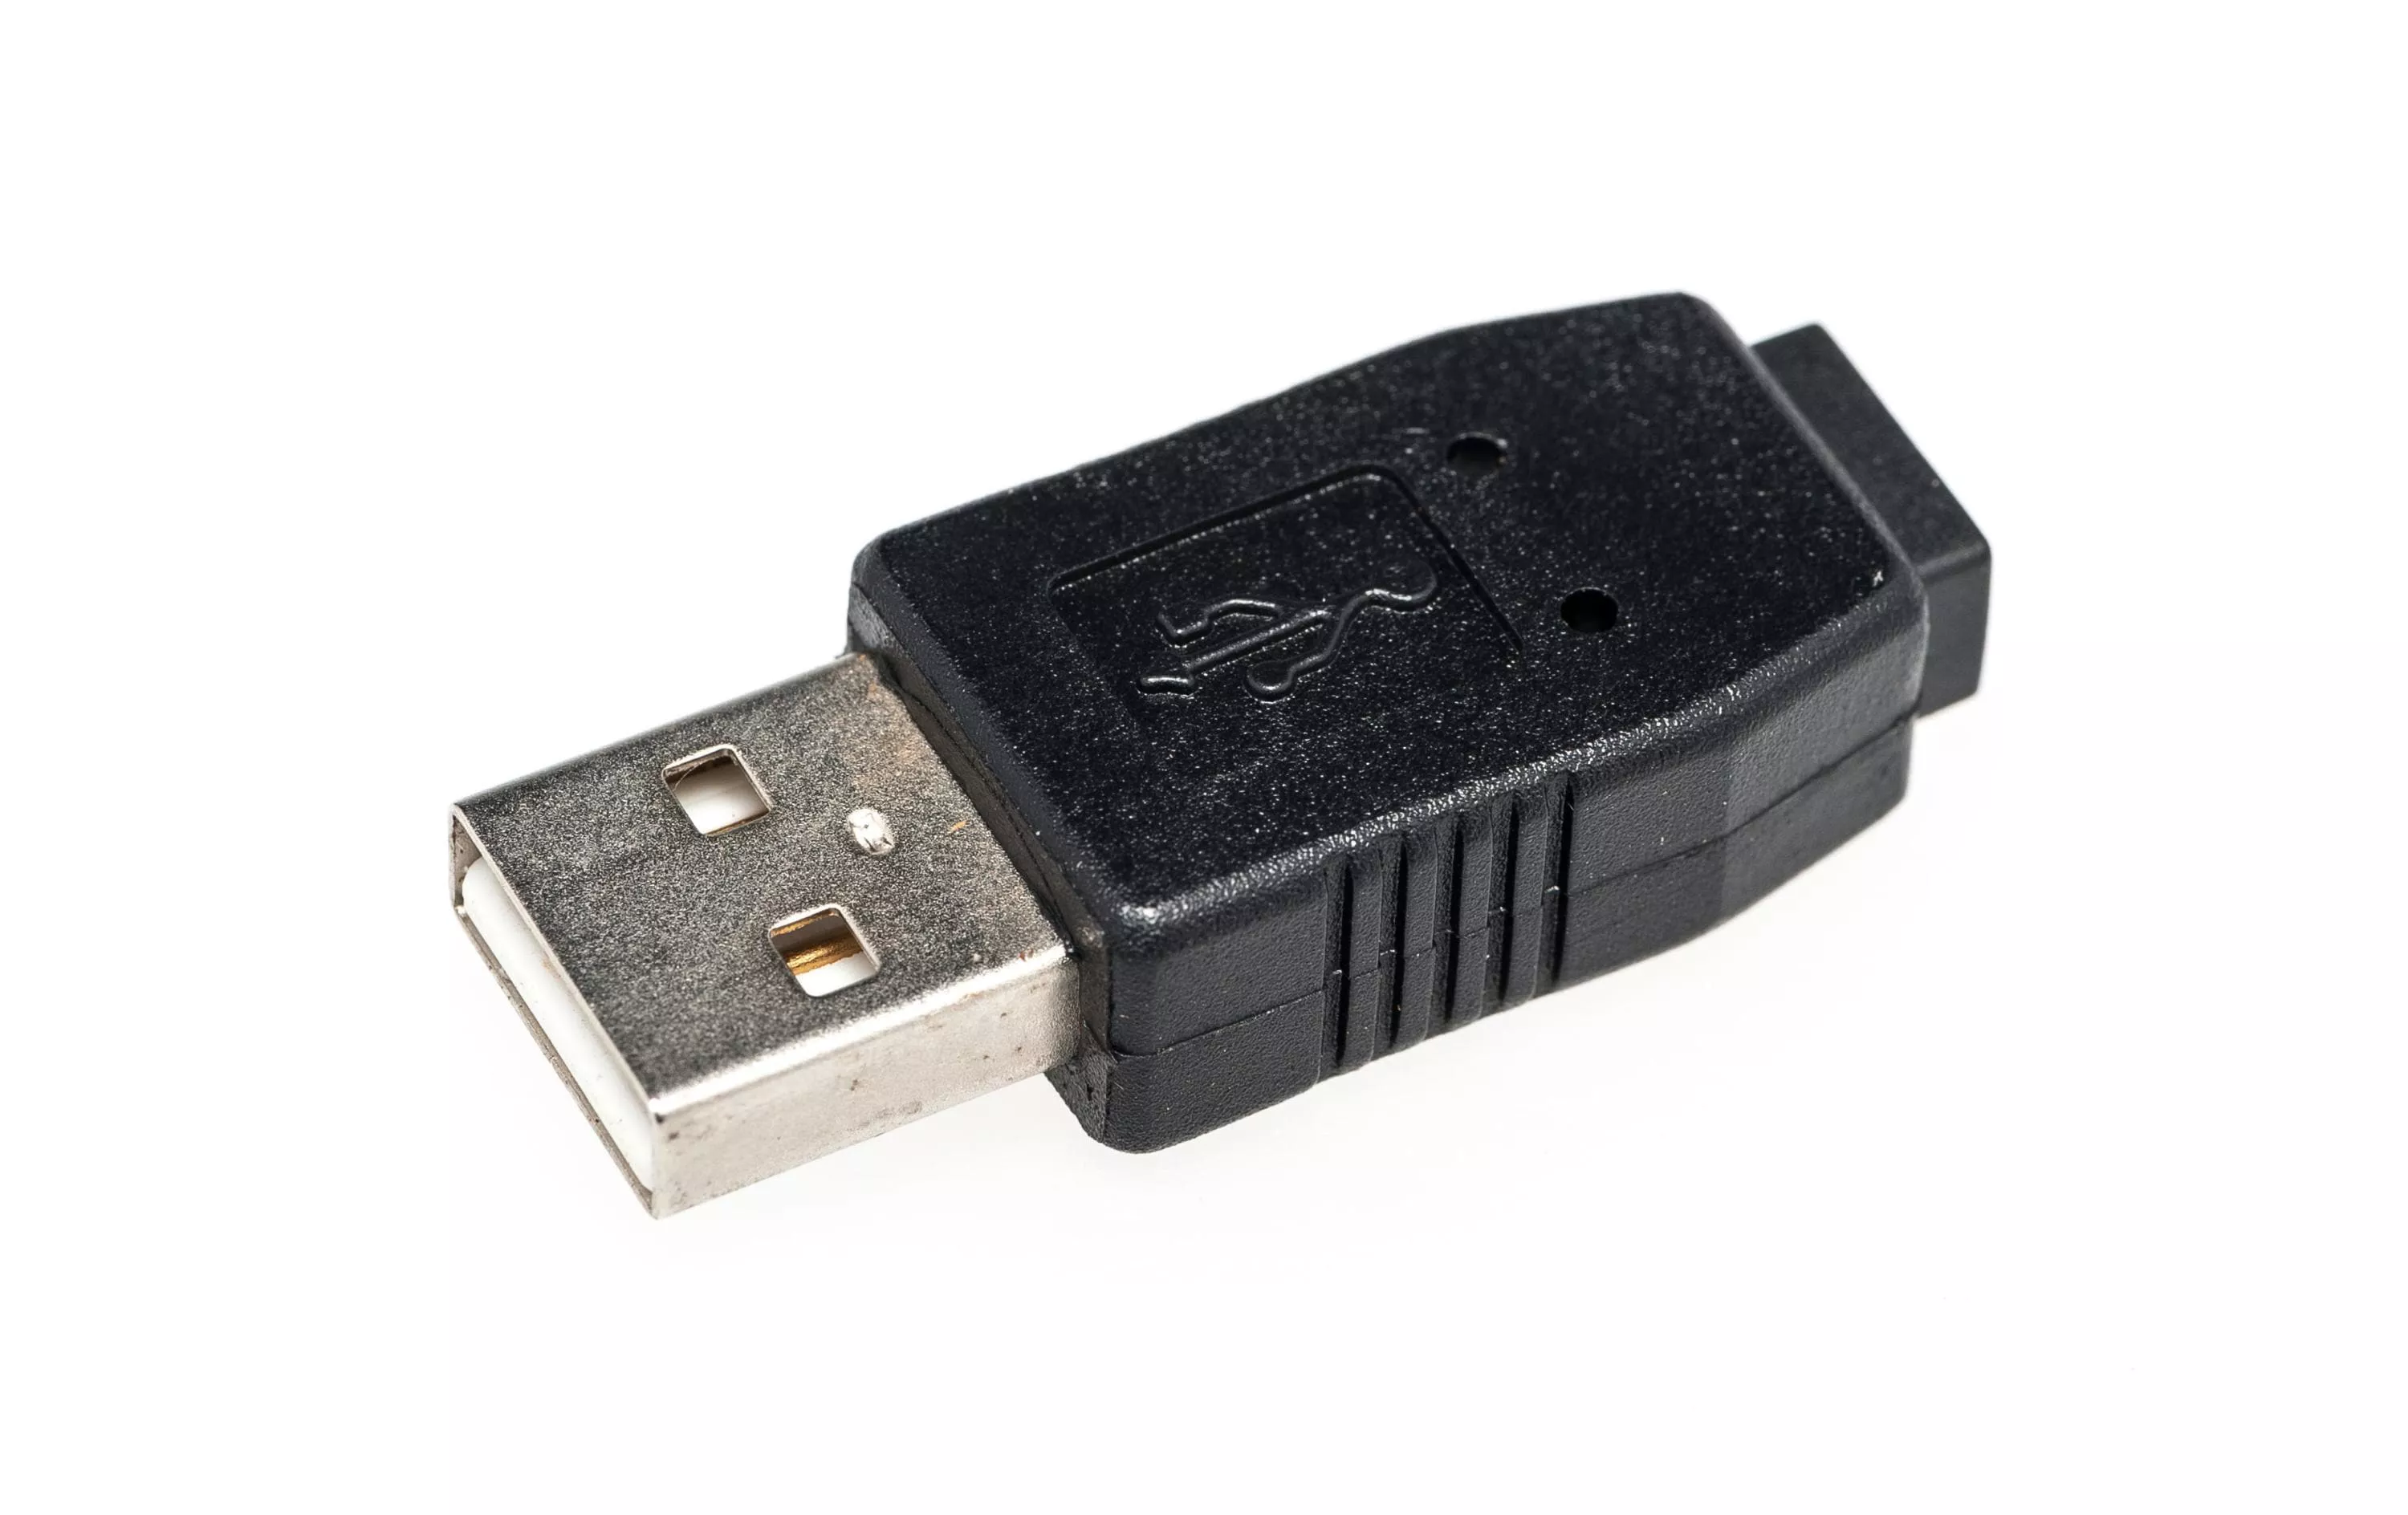 USB 2.0 Adapter USB-A Stecker - USB-MiniB Buchse